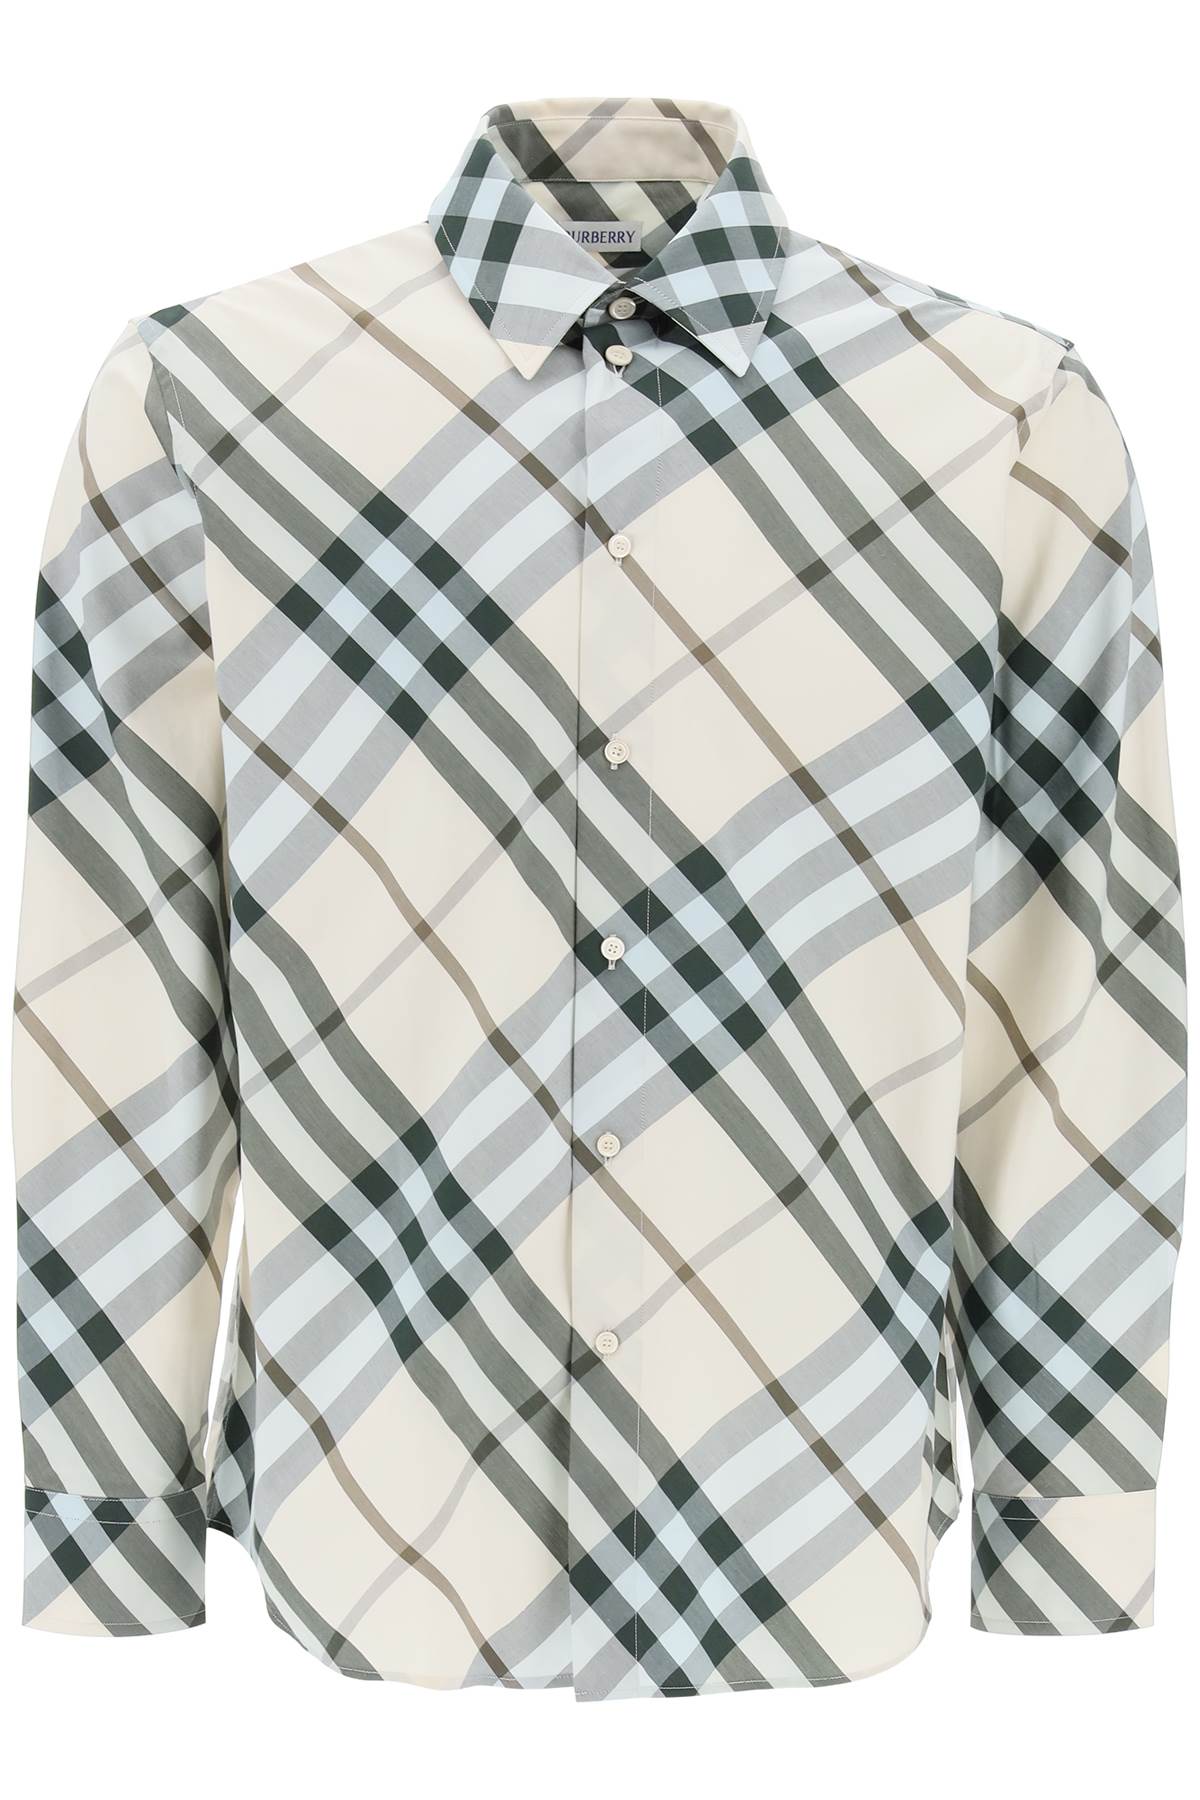 Aqua Burberry Checked Long-Sleeved Shirt for Men